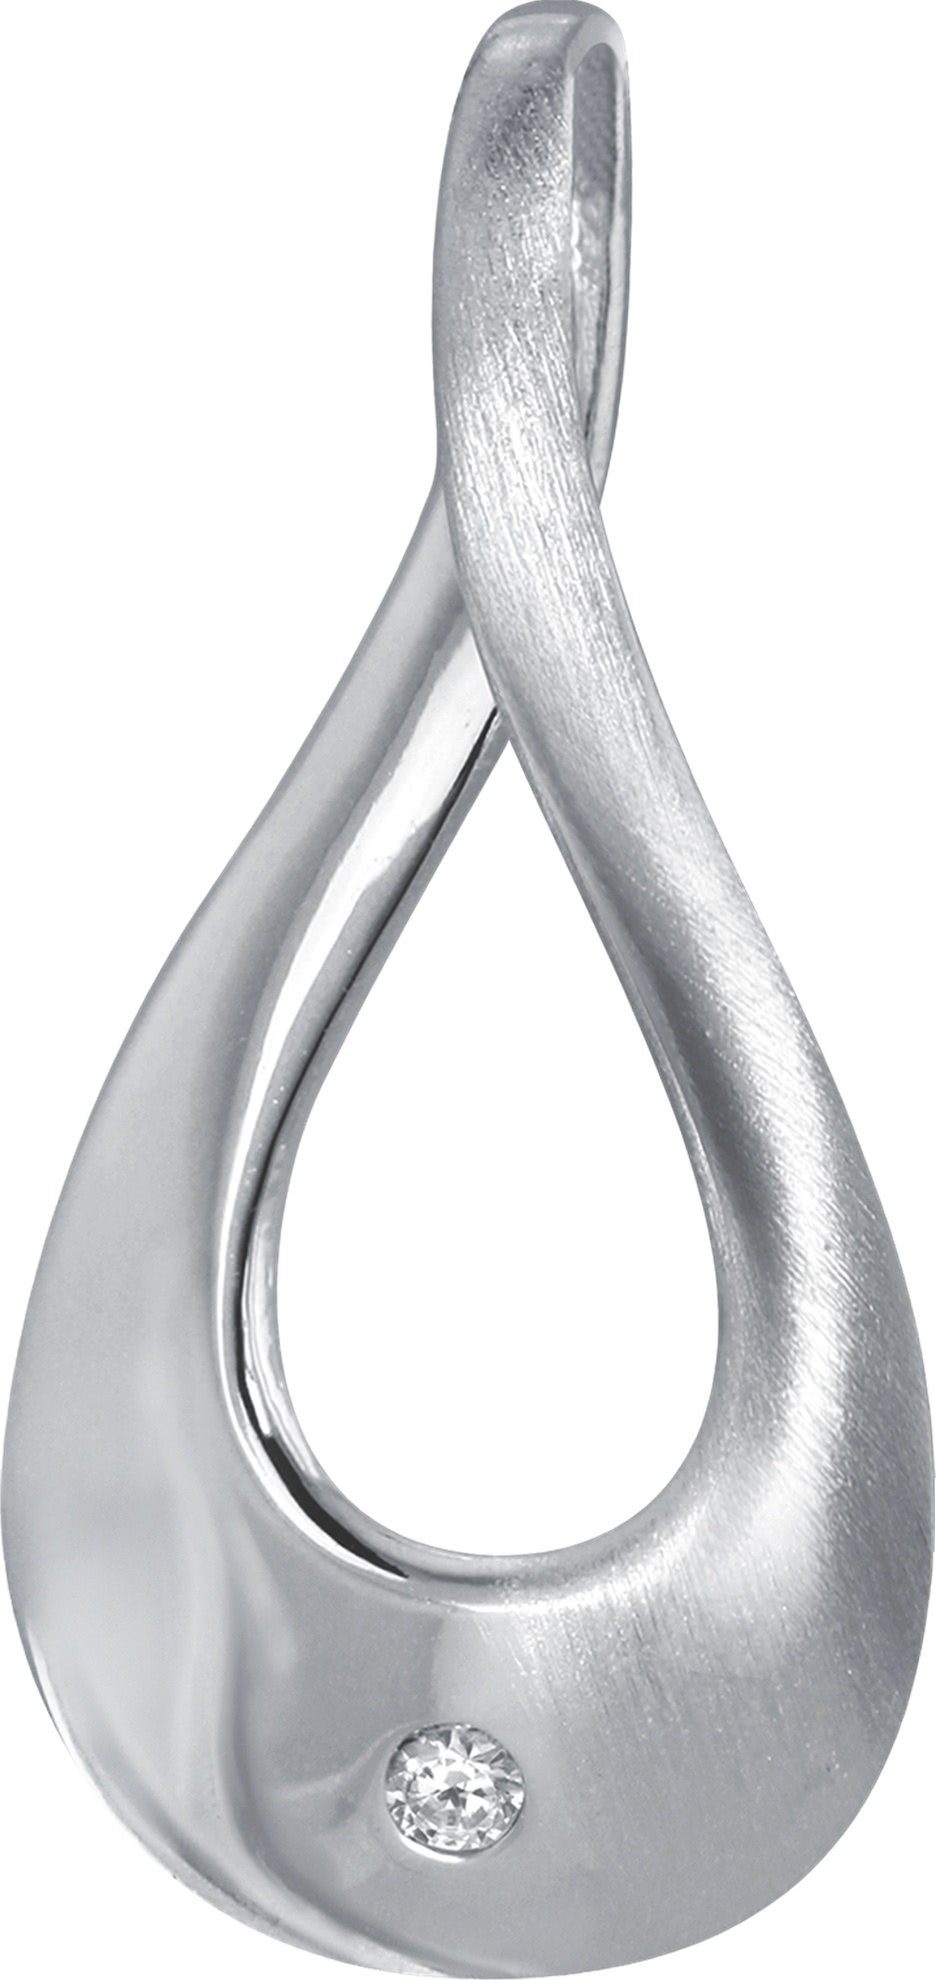 Balia Kettenanhänger Balia Damen Kettenanhänger Silber, Kettenanhänger (Elegance) ca. 2,5cm, 925 Sterling Silber